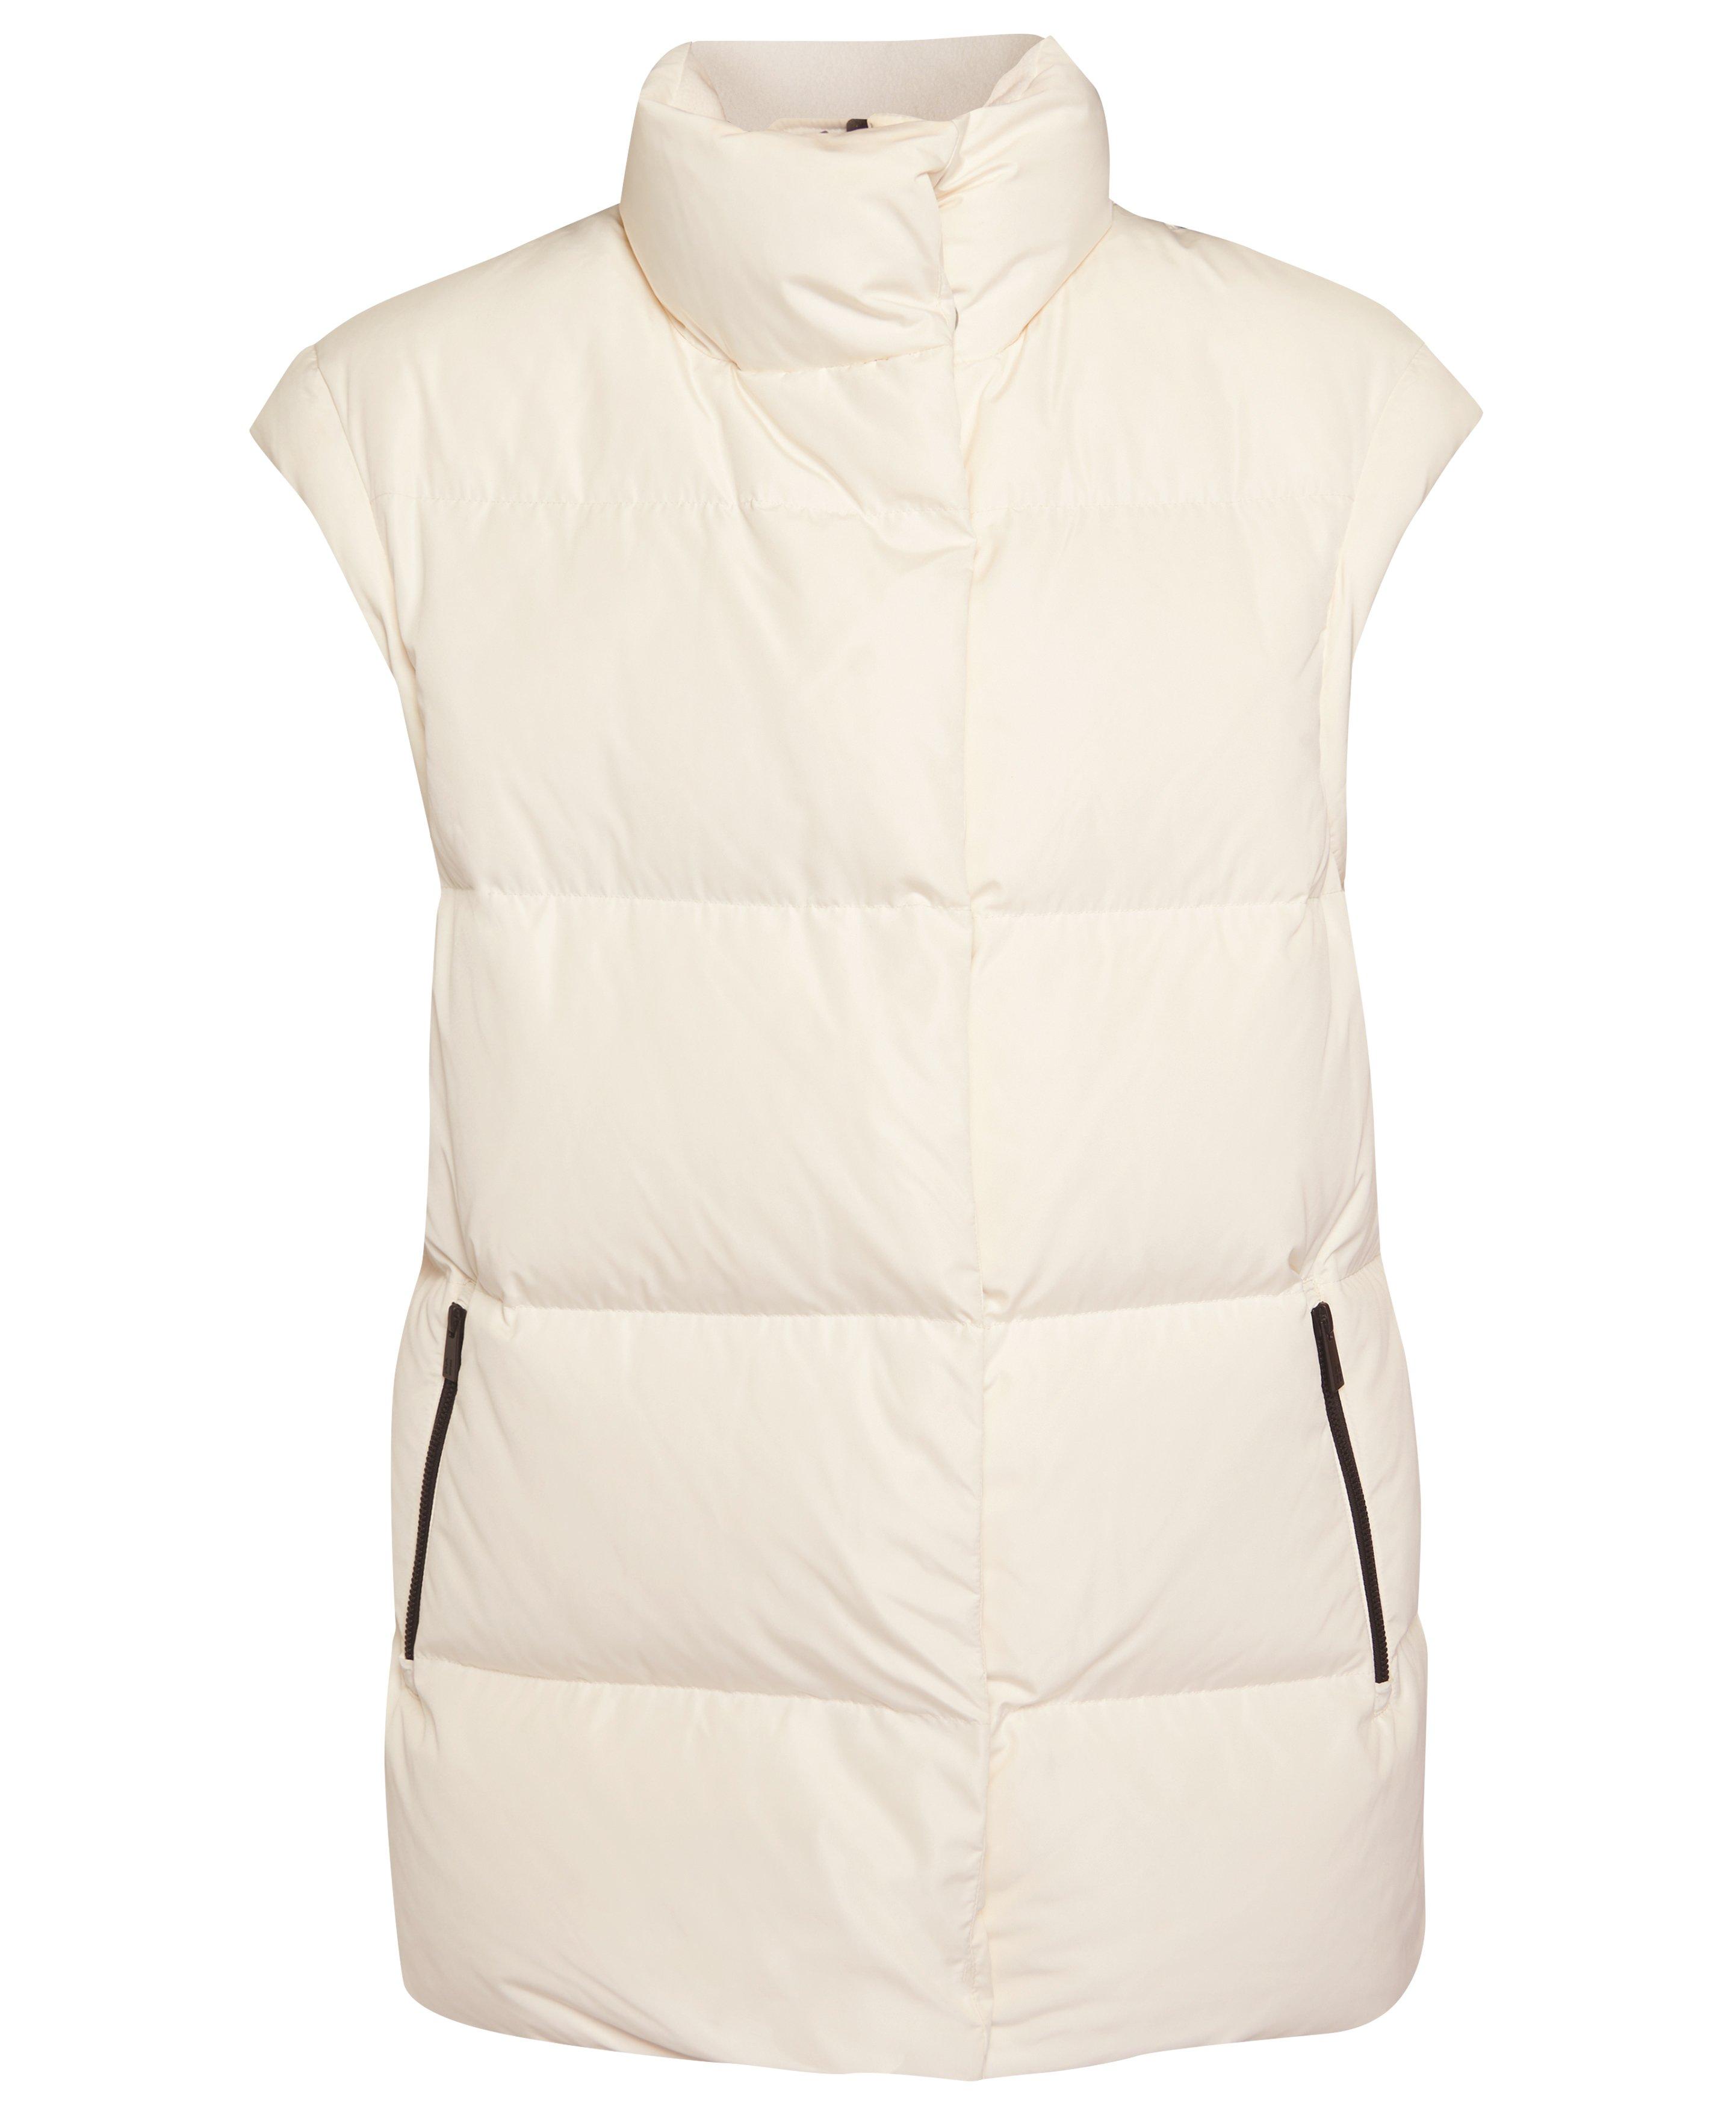 Women White Puffer Vest, Puffer Sleeveless Jacket, Duck Puffer Jacket